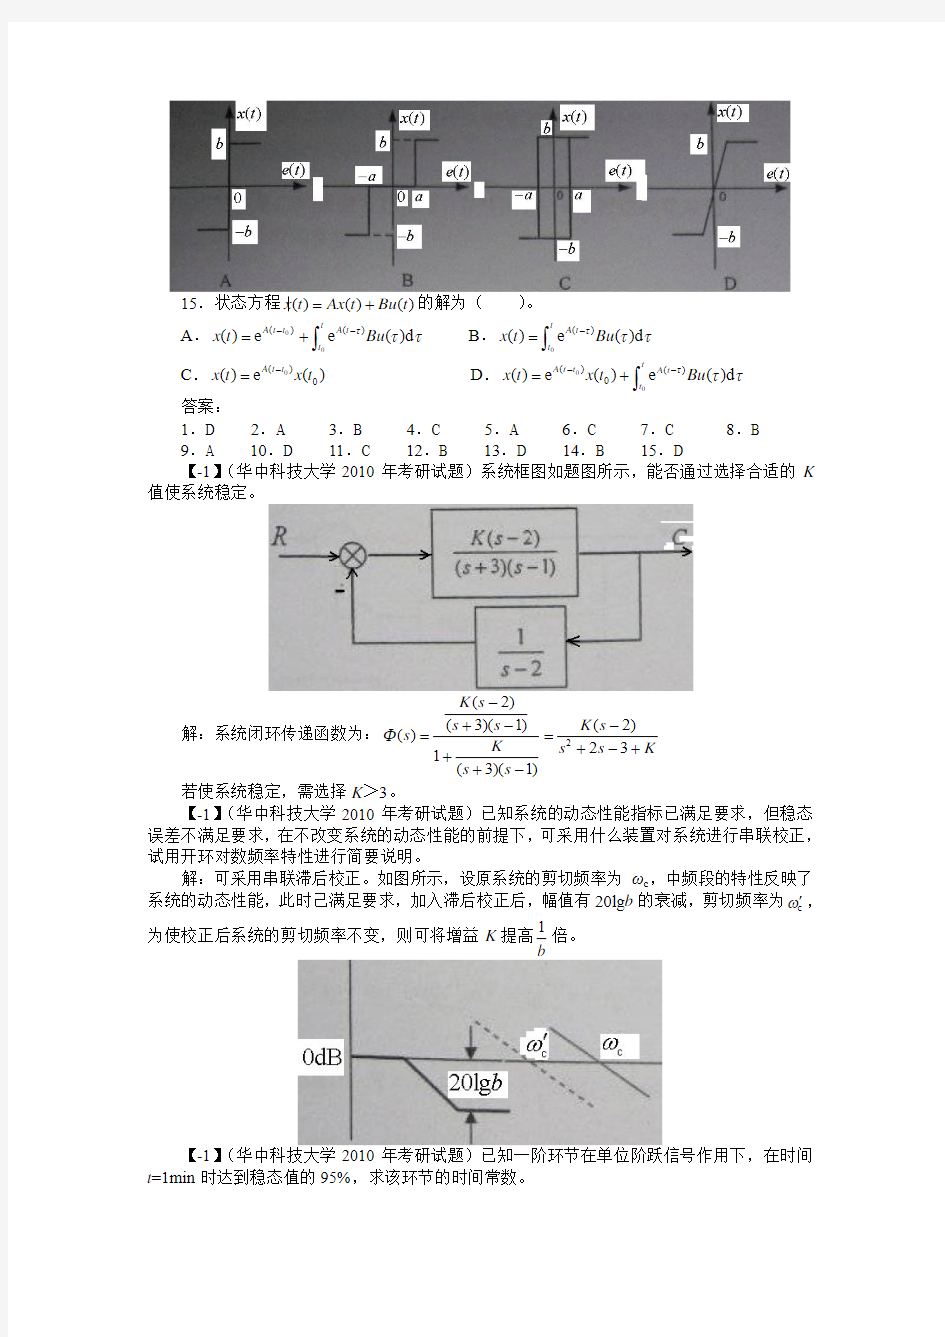 (定稿)华中科技大学2010年《自动控制原理》考研试题答案与详解(附录)